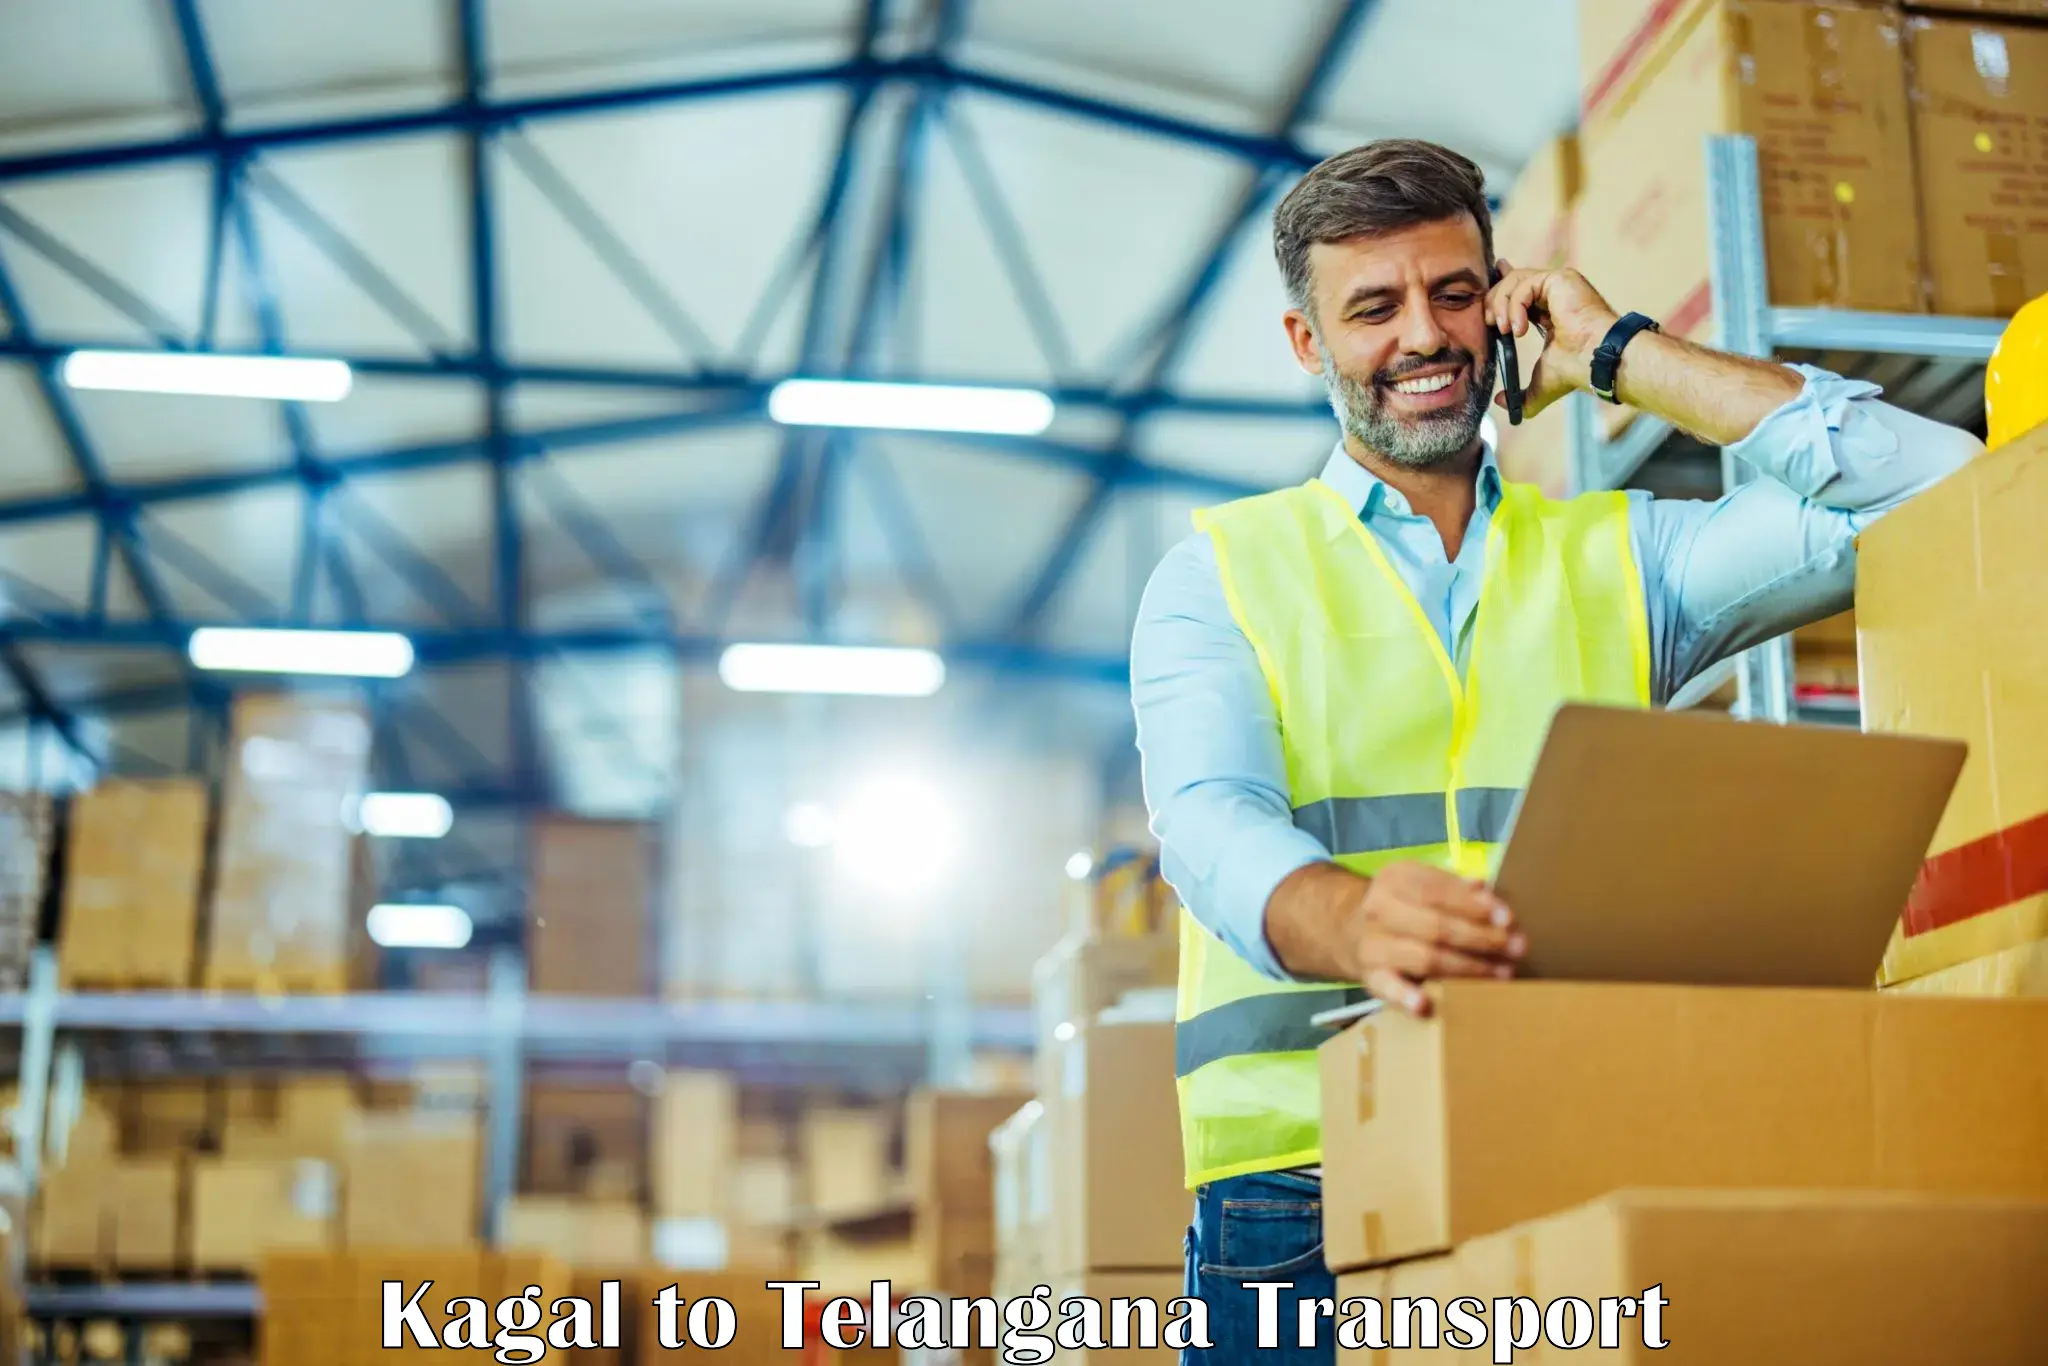 Shipping partner Kagal to Dahegaon